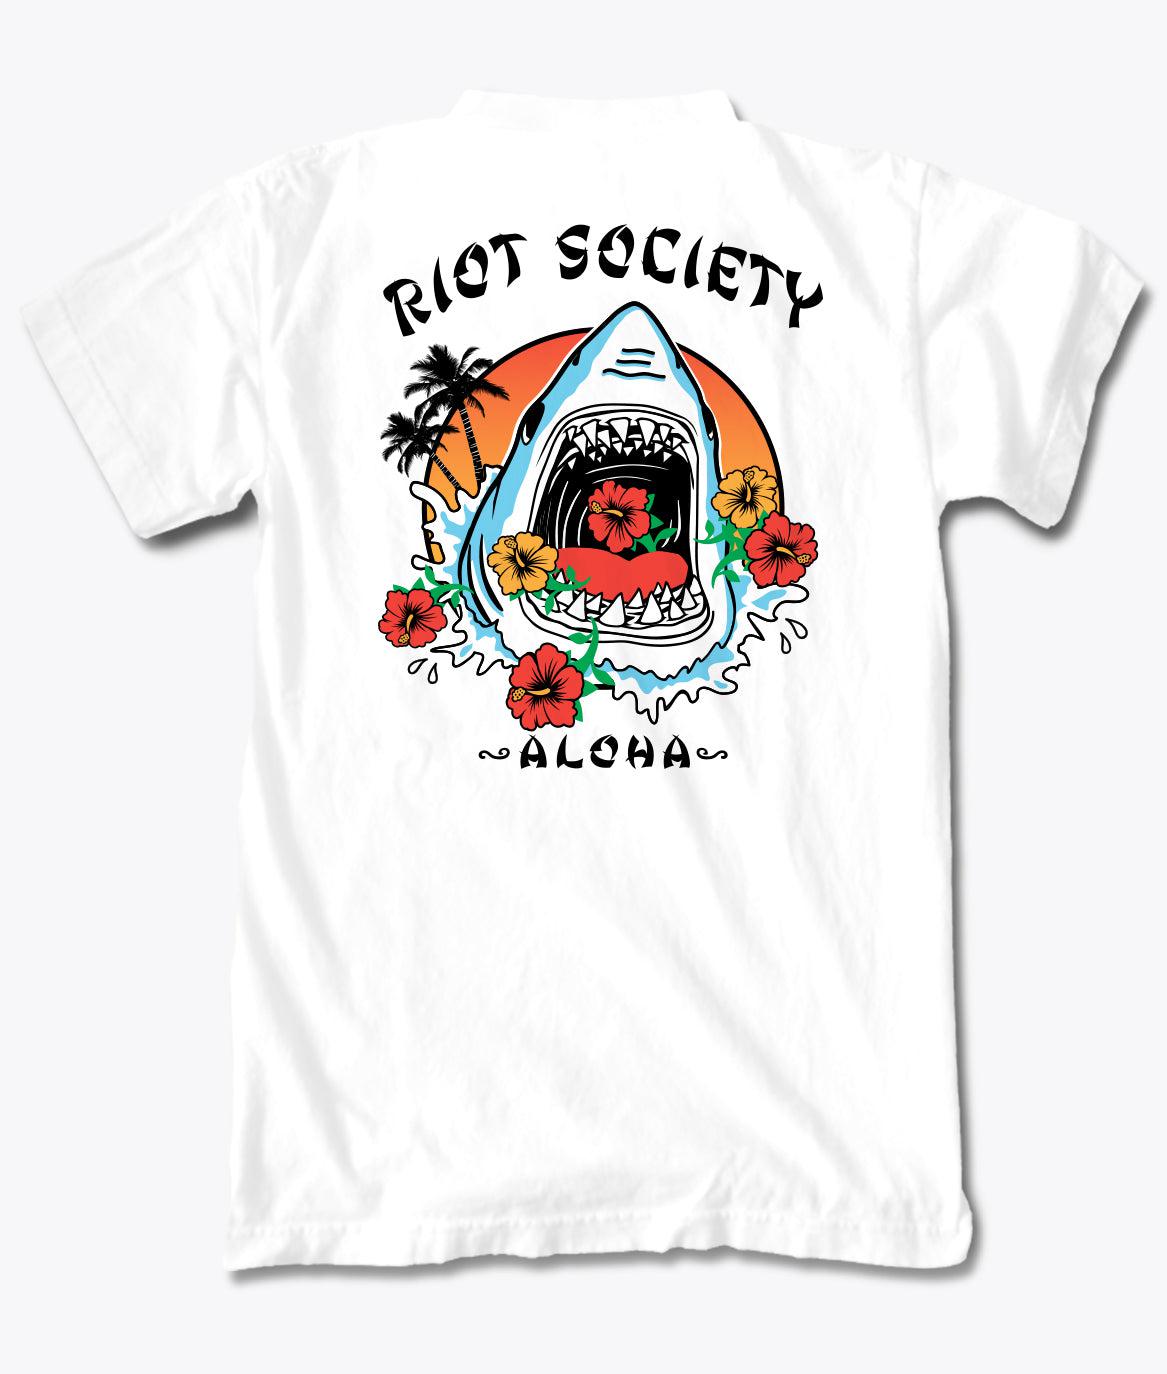 Shark Aloha Boys Tee - S - Riot Society